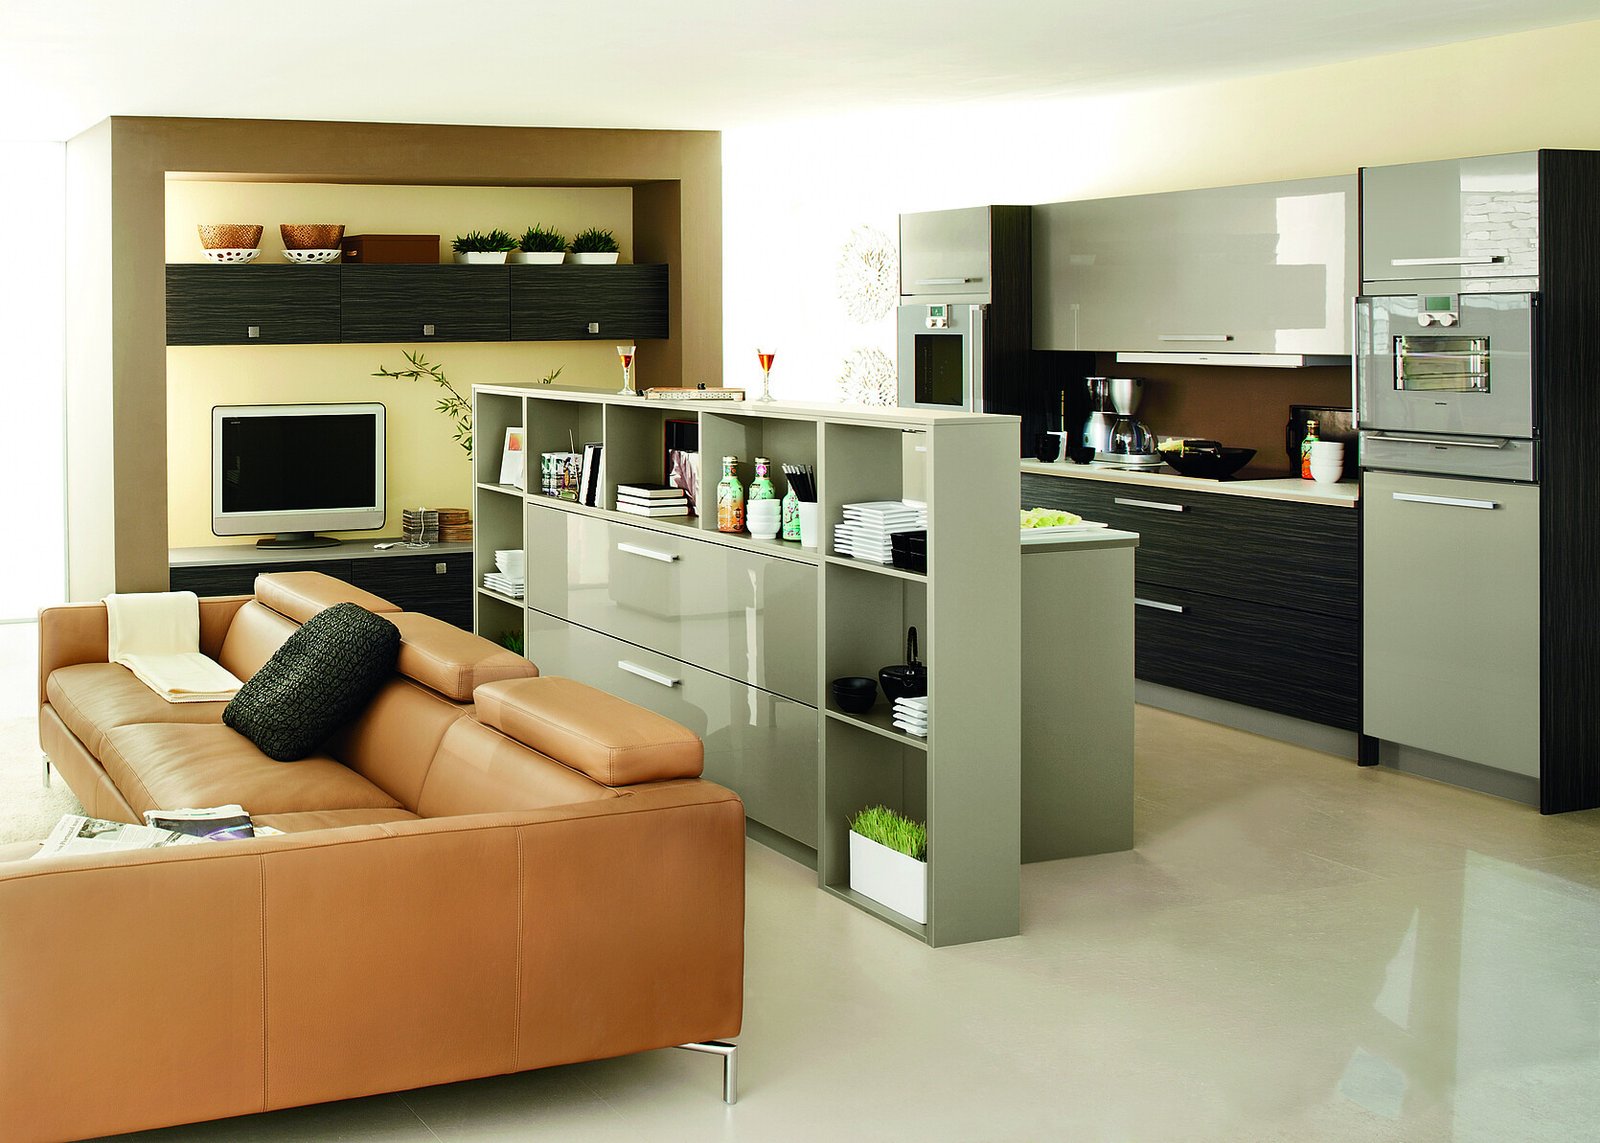 Offene Küche Mit Wohnzimmer: Einrichtungstipps within Wohnzimmer Küche Offen